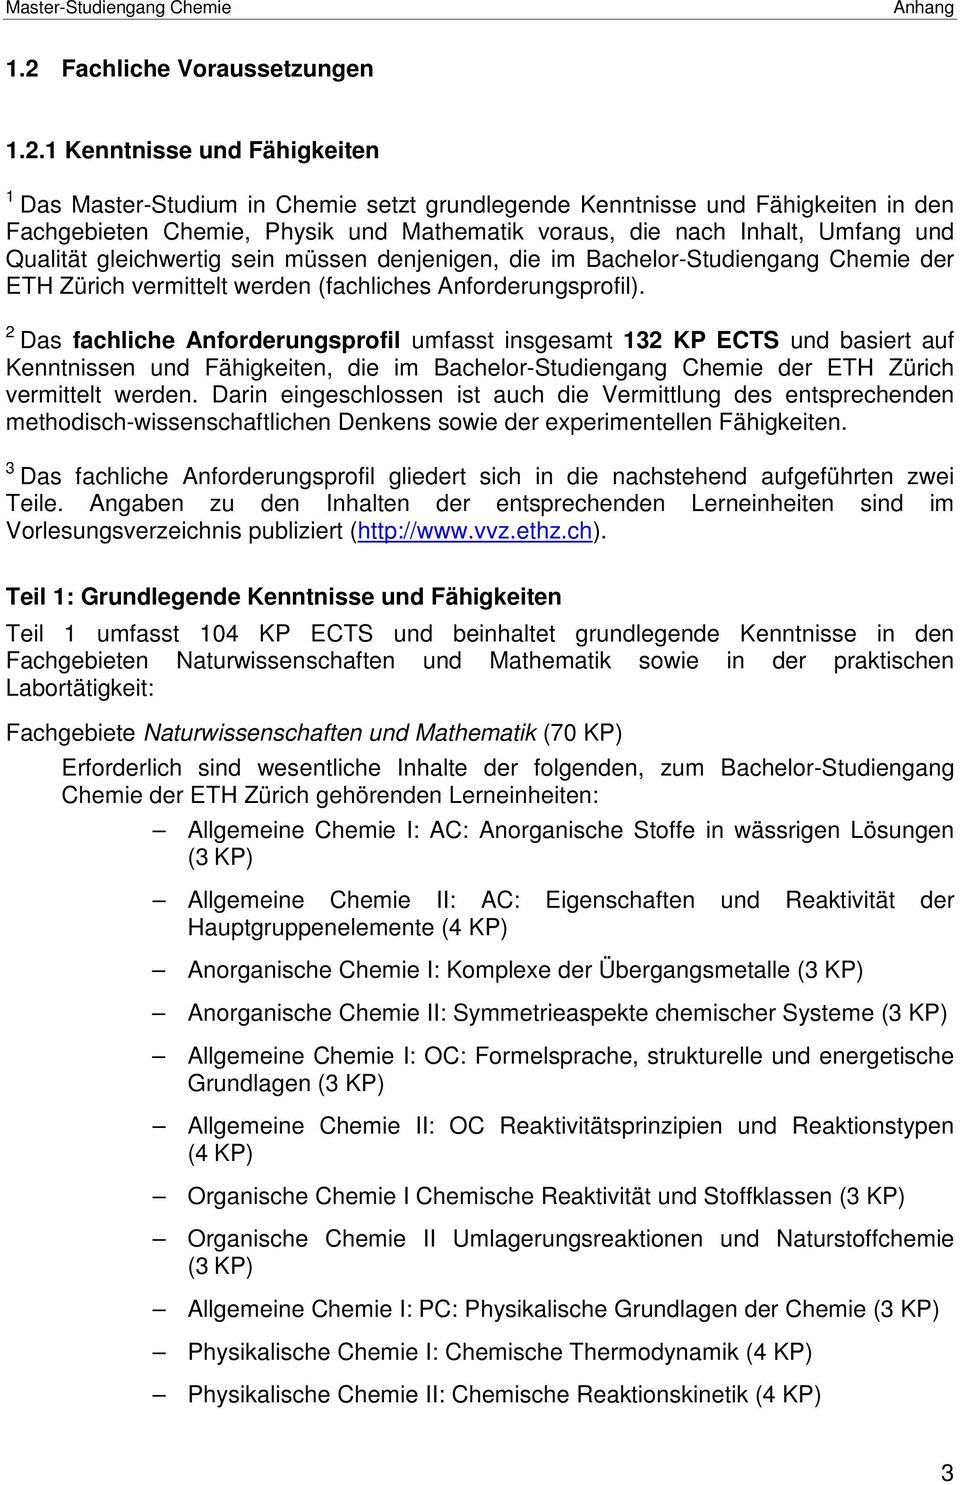 2 Das fachliche Anforderungsprofil umfasst insgesamt 132 KP ECTS und basiert auf Kenntnissen und Fähigkeiten, die im Bachelor-Studiengang Chemie der ETH Zürich vermittelt werden.